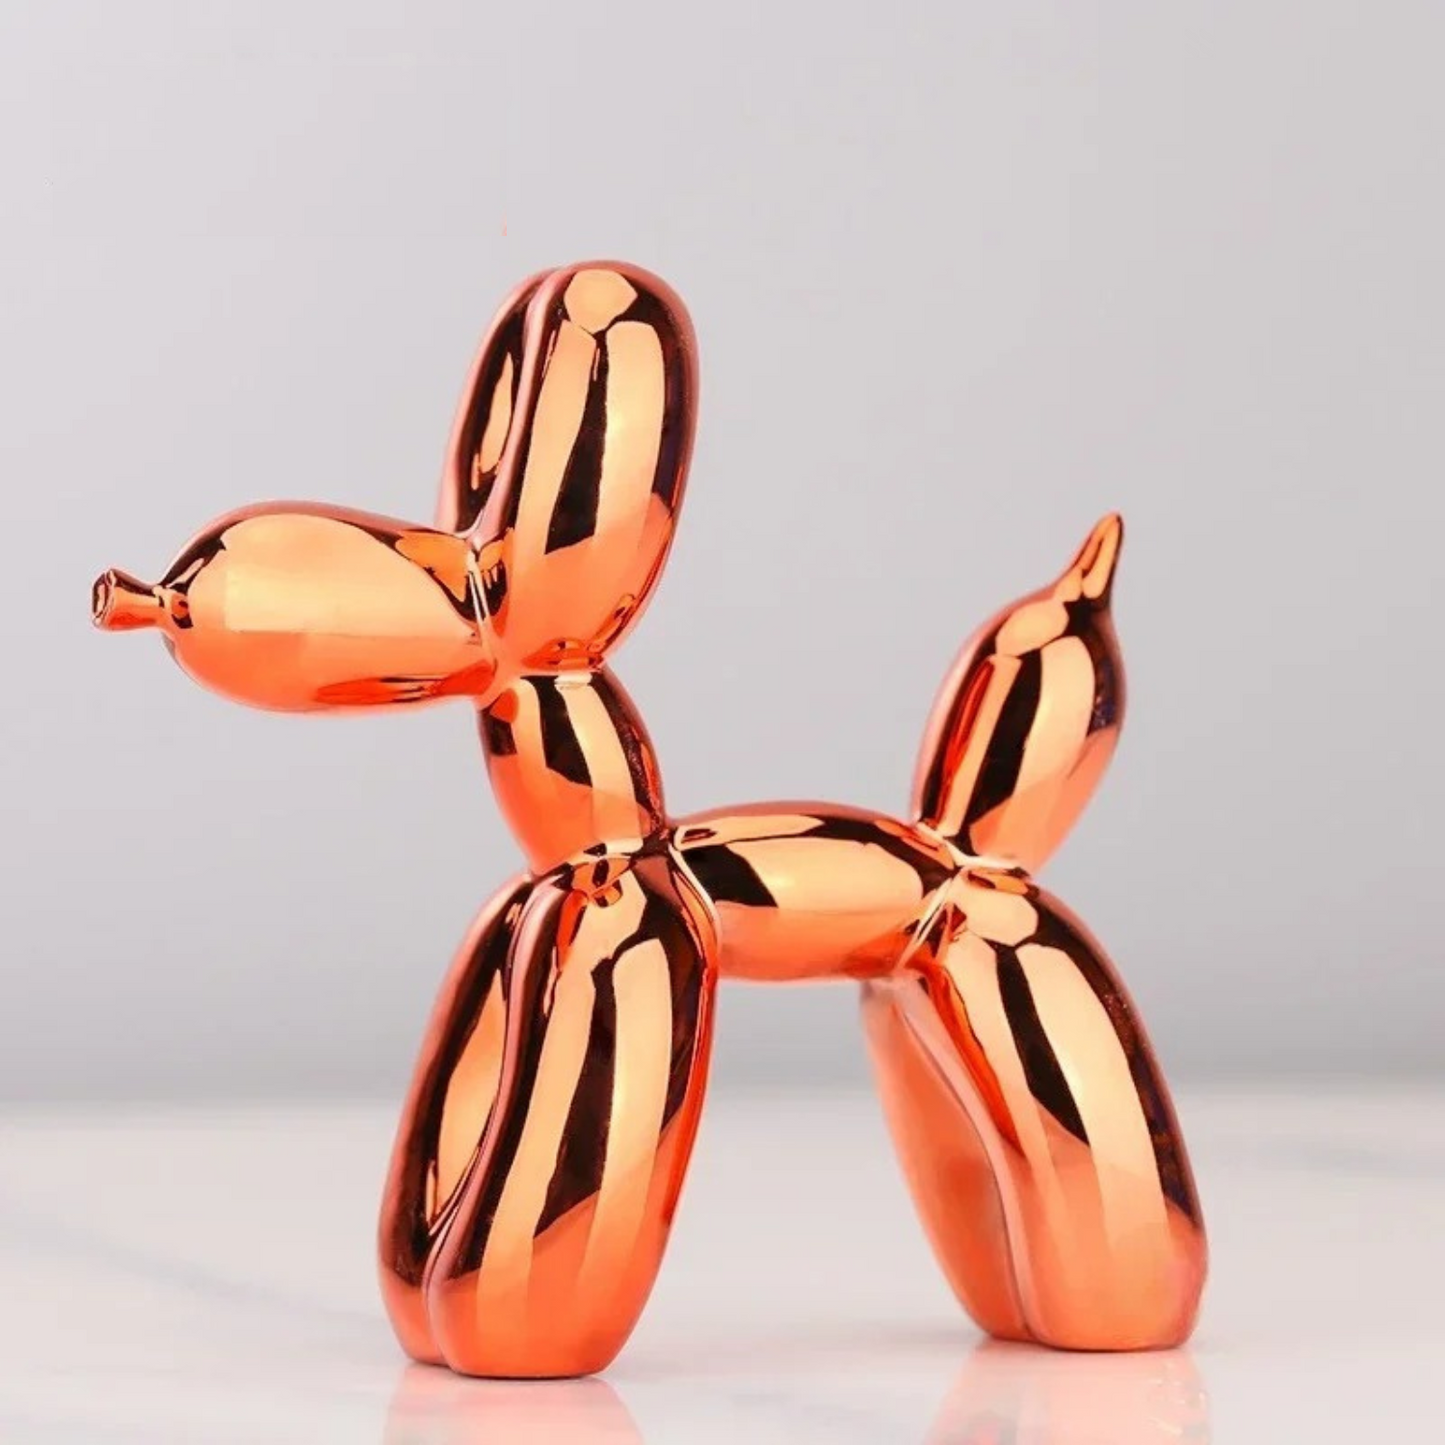 ArtZ® Balloon Dog Sculpture